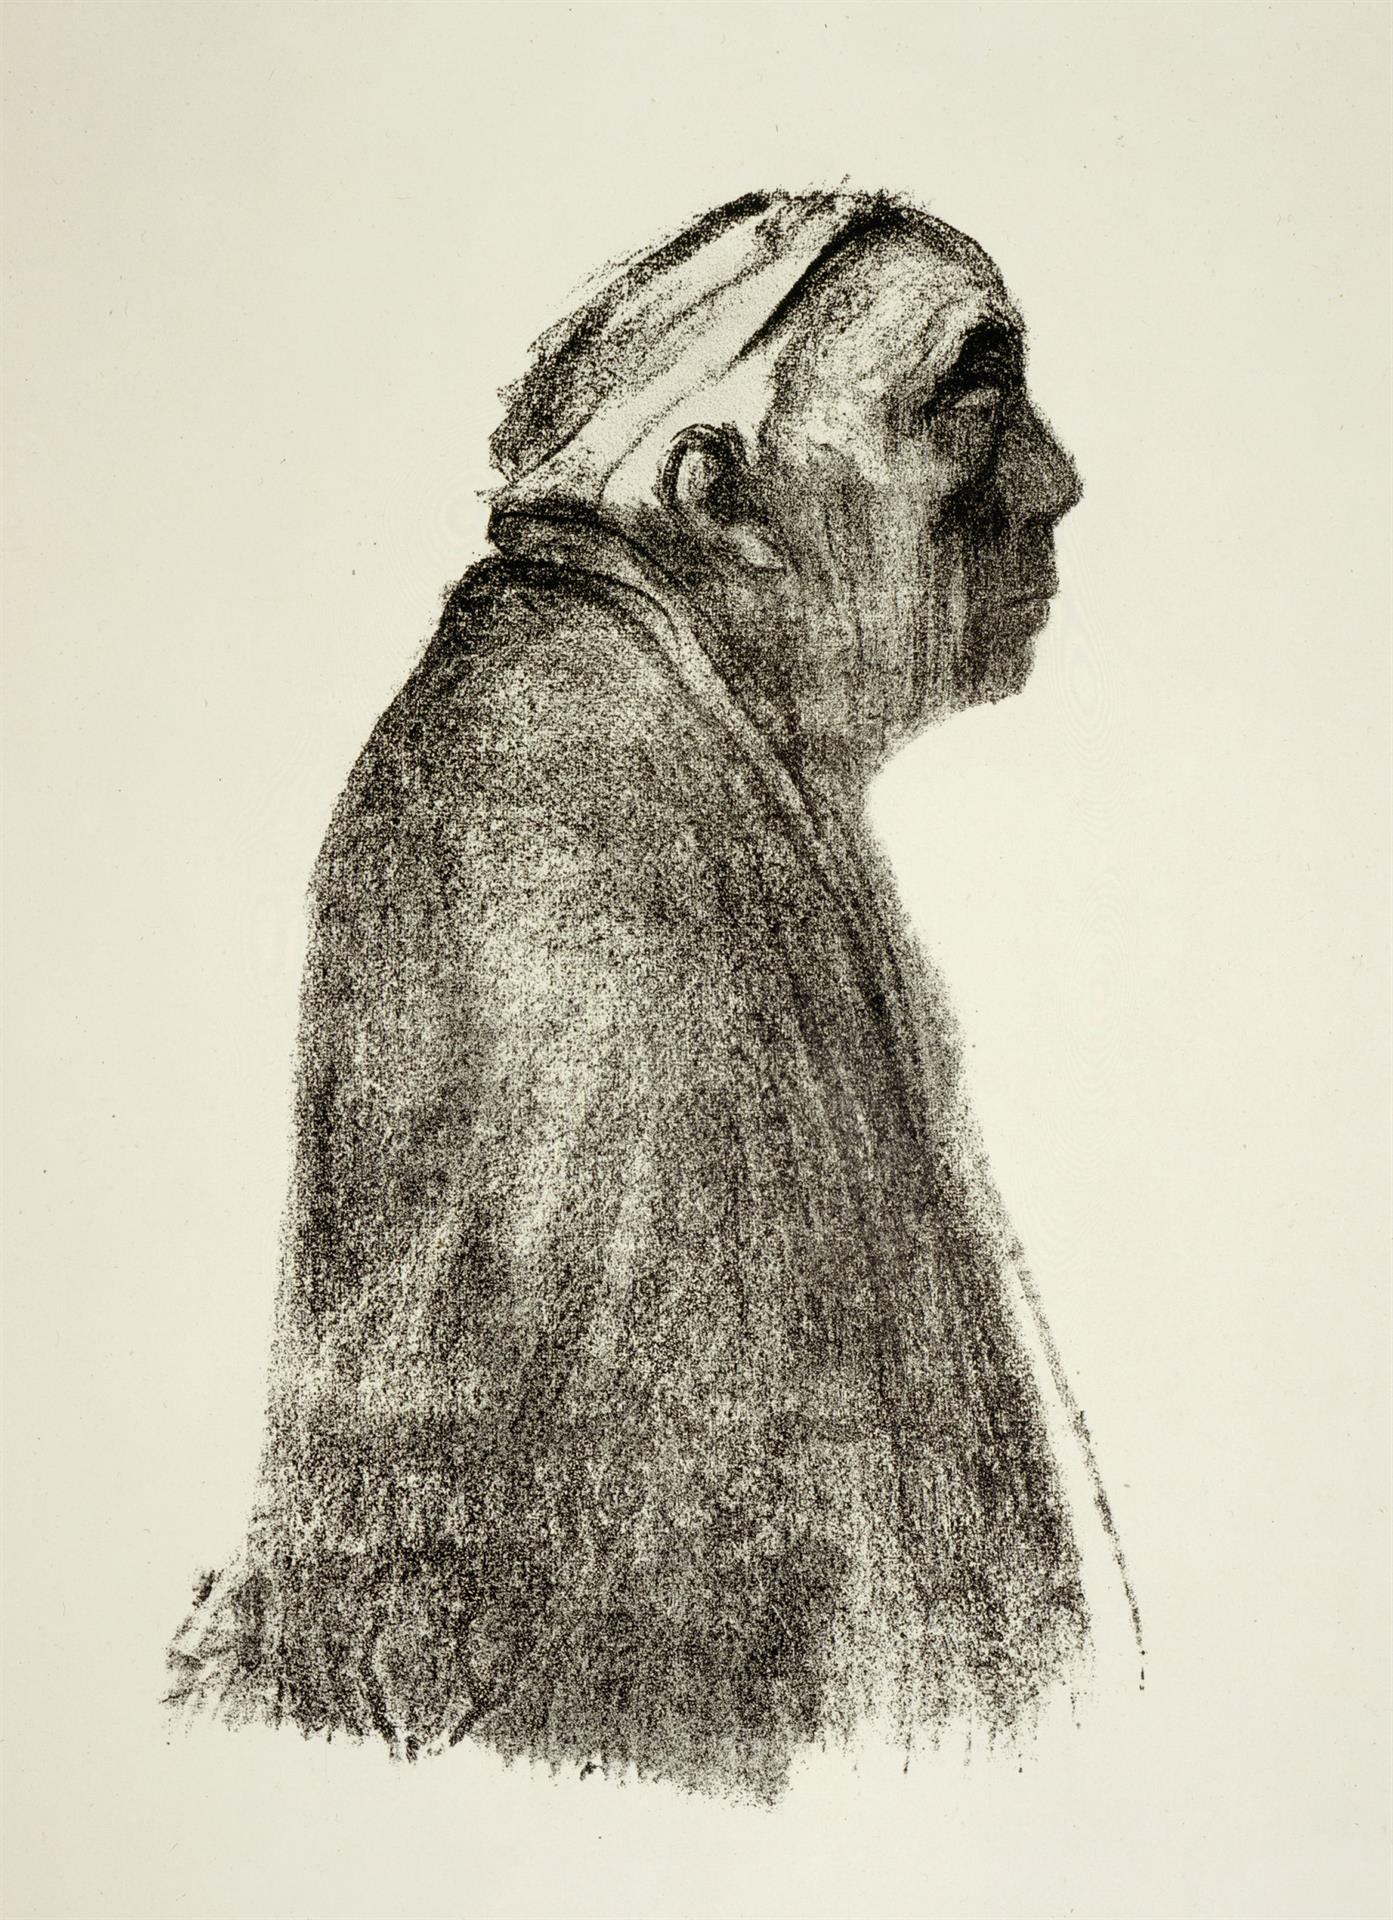 Käthe Kollwitz, Self-portrait in profile towards right, 1938?, chalk lithograph (transfer), Kn 273 III, Cologne Kollwitz Collection © Käthe Kollwitz Museum Köln